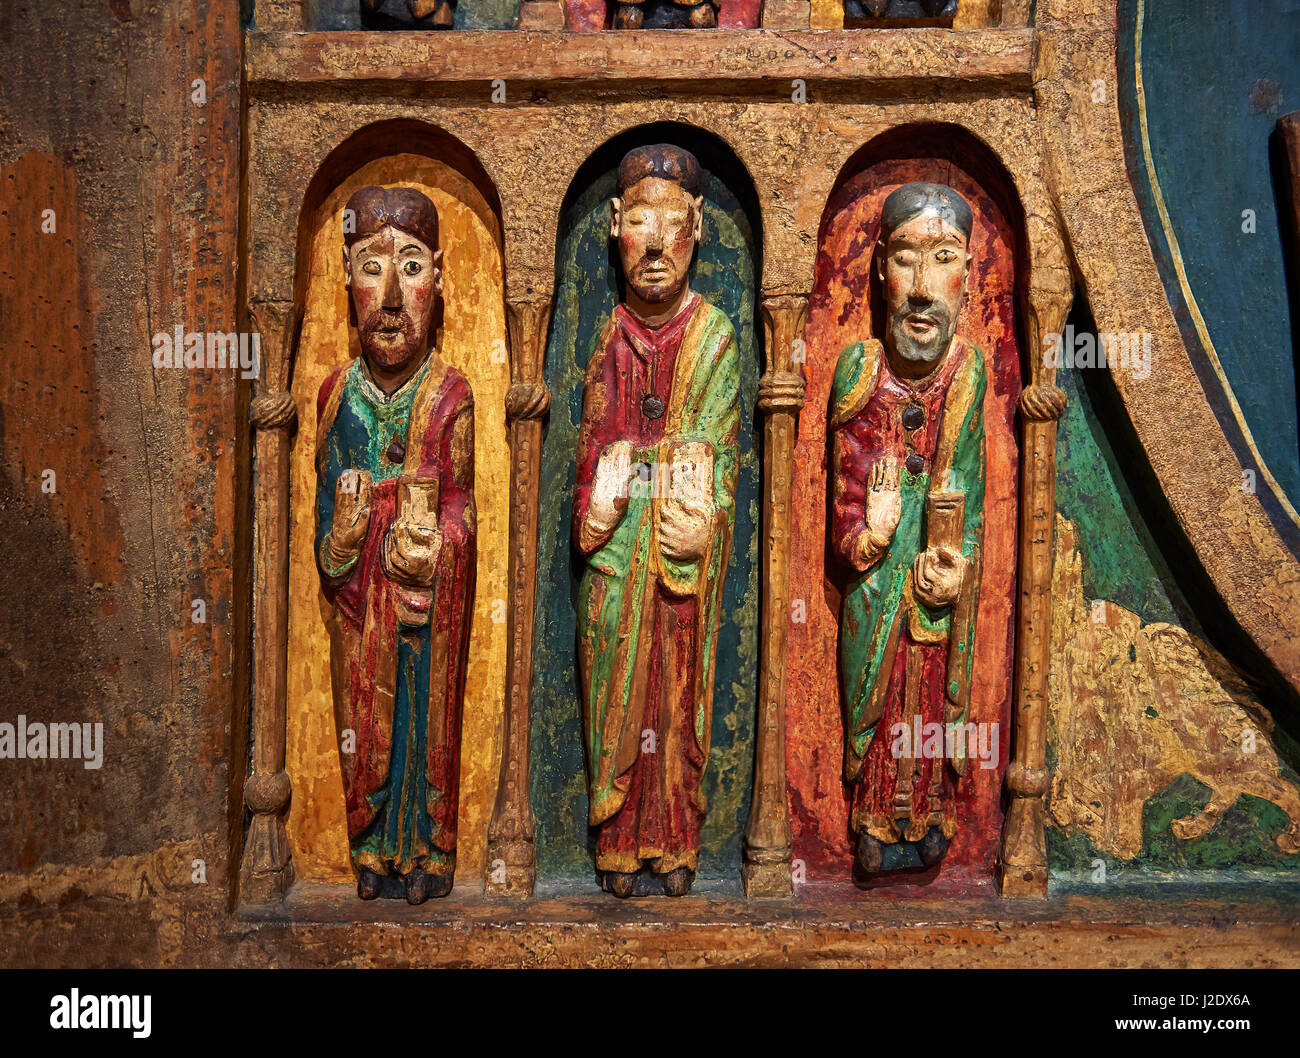 Dreizehnten Jahrhundert Romanesque geschnitzt und bemalt Altar Darstellung der Apostel aus St. Maria de Taull, Vall de Boi, hohe Ribagorca, Spanien.  Nationale A Stockfoto